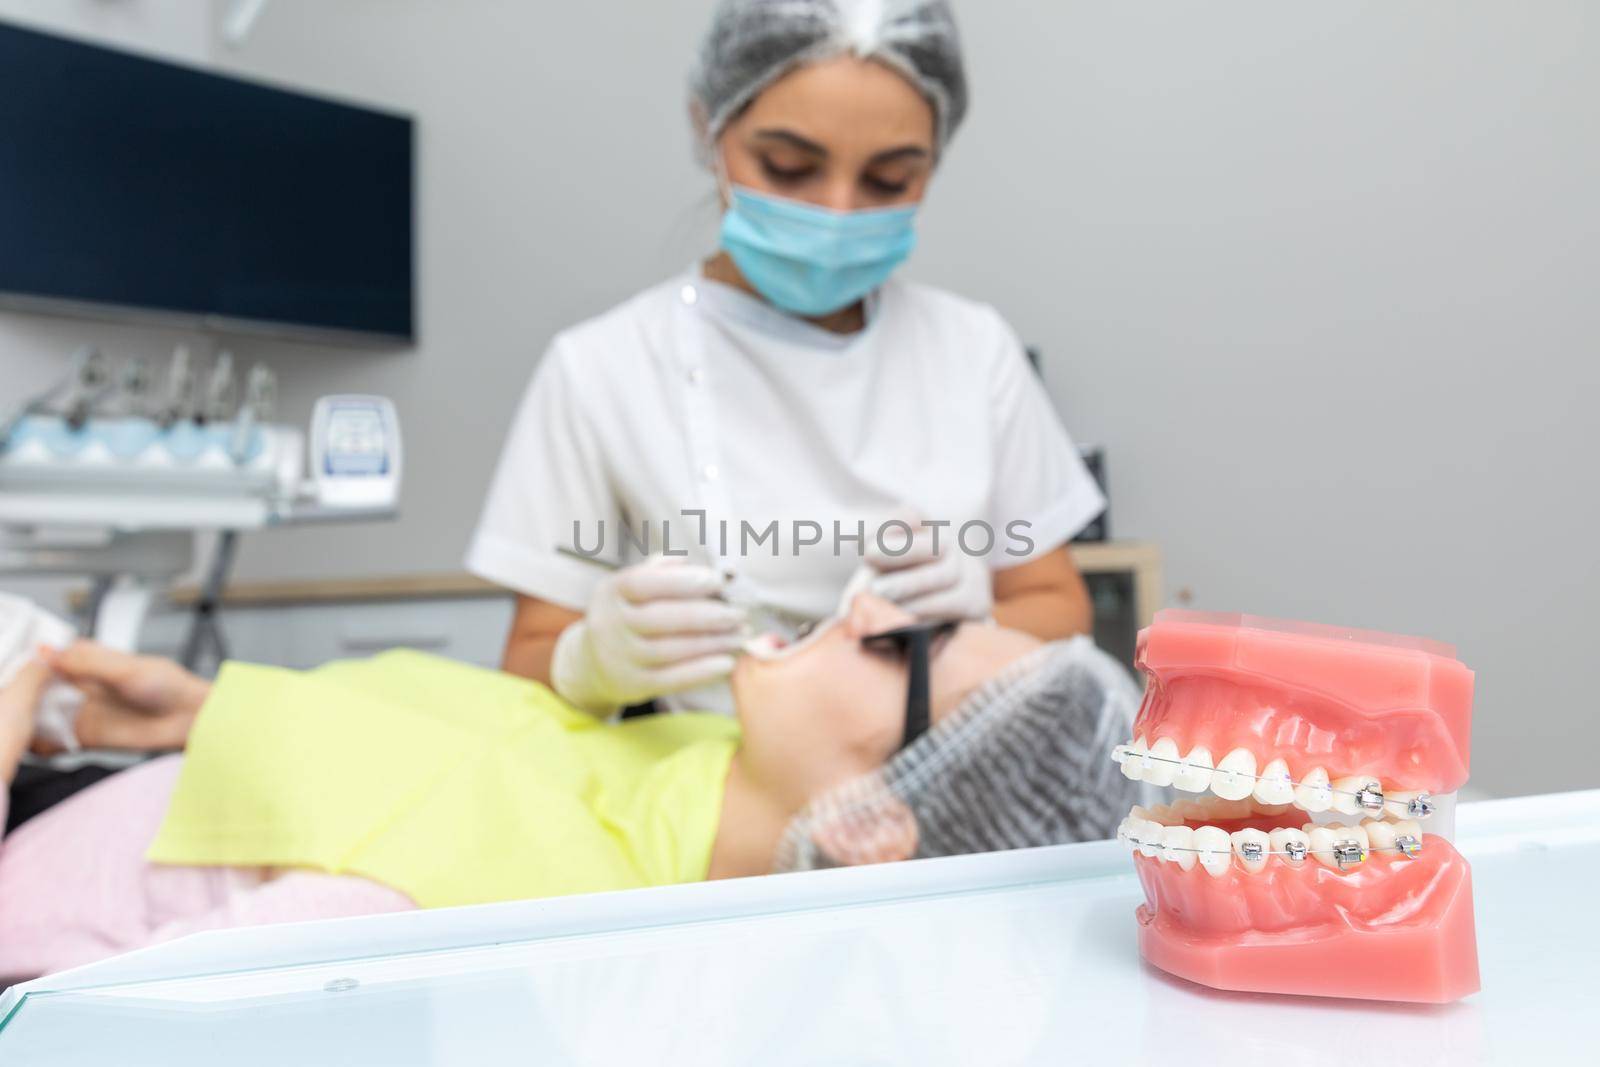 Orthodontic model and dentist tool. Teeth model of varities of orthodontic bracket or braces